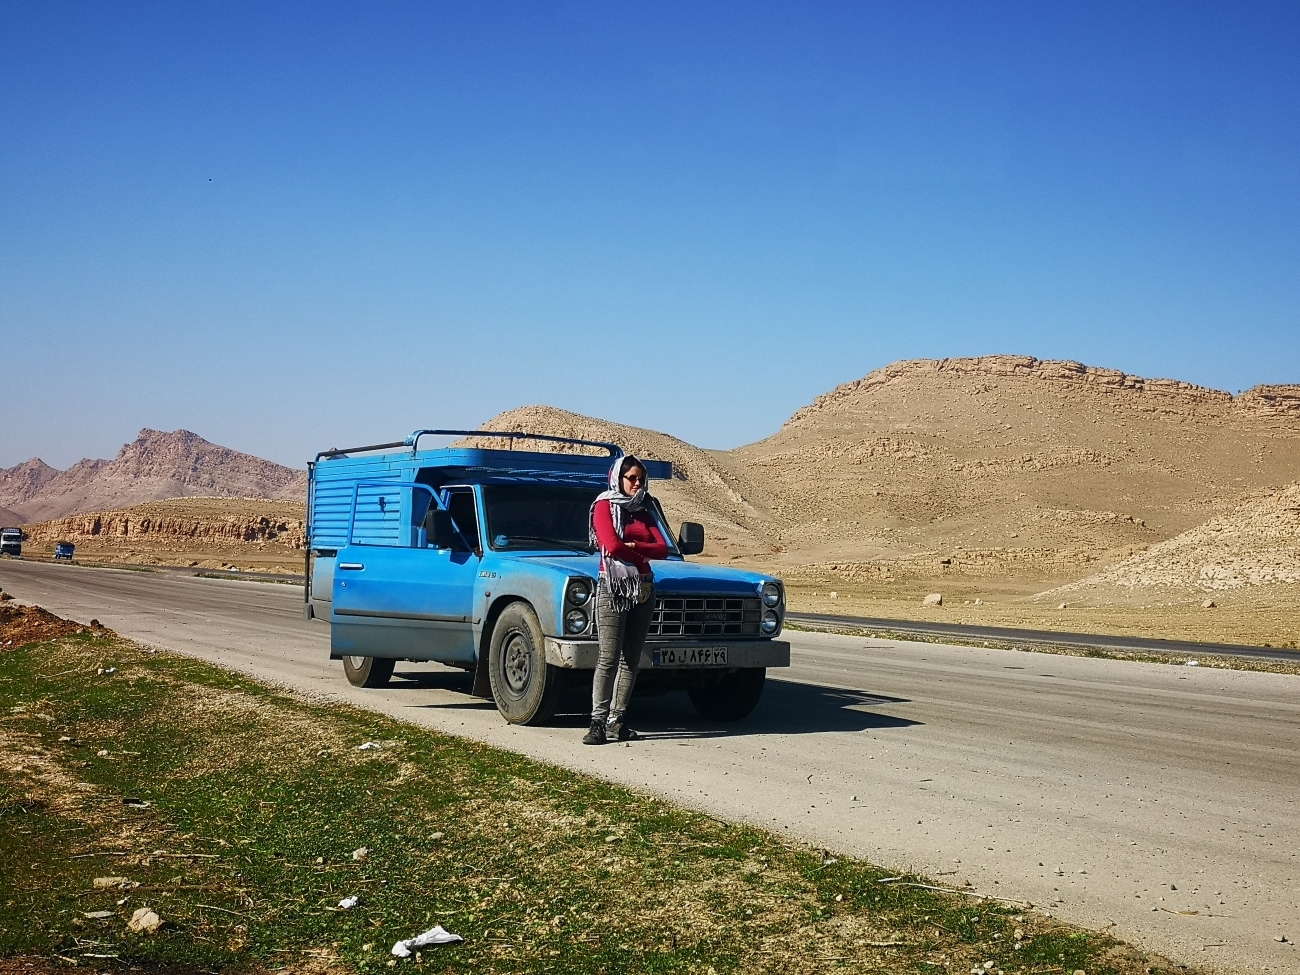 Coming down from Kermanshah (go